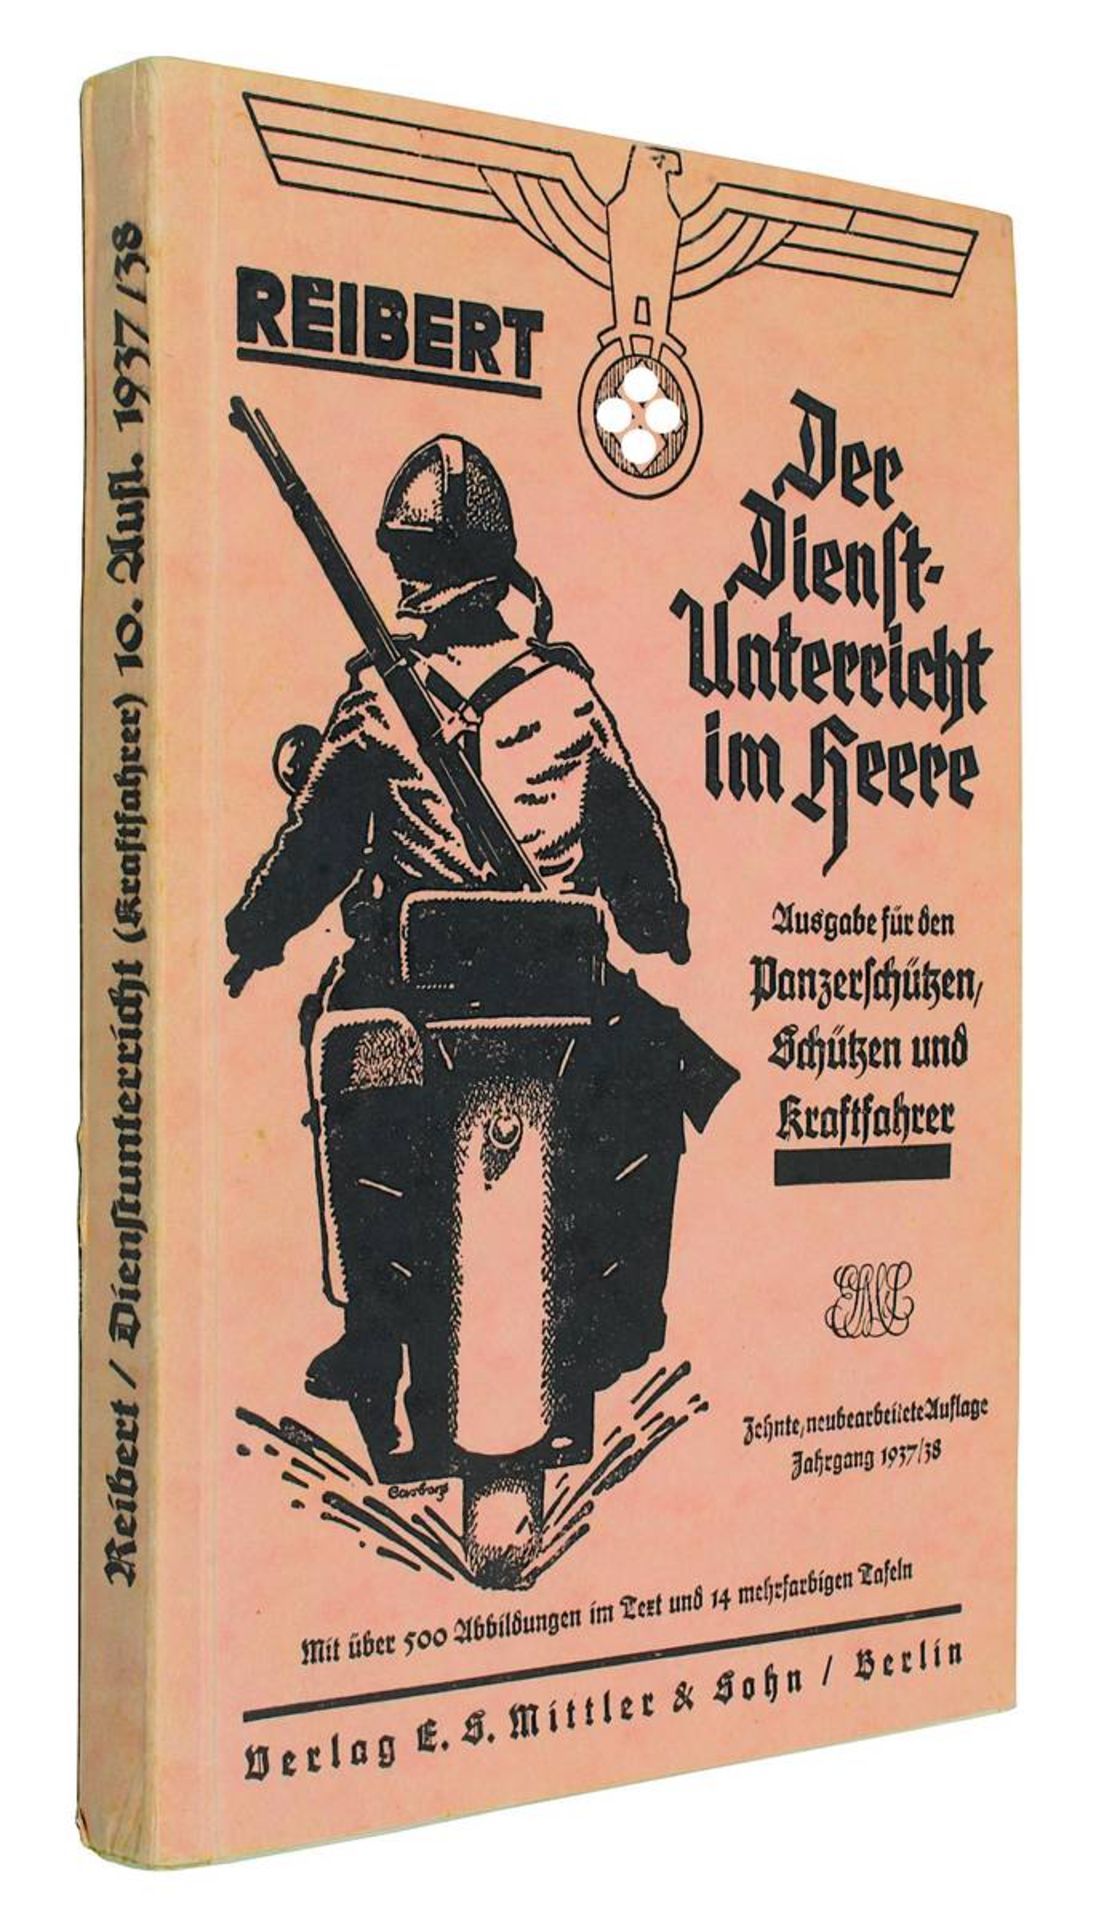 Reibert, Wilhelm, "Der Dienstunterricht im Heere. Ausgabe für den Panzerschützten, Schützen und